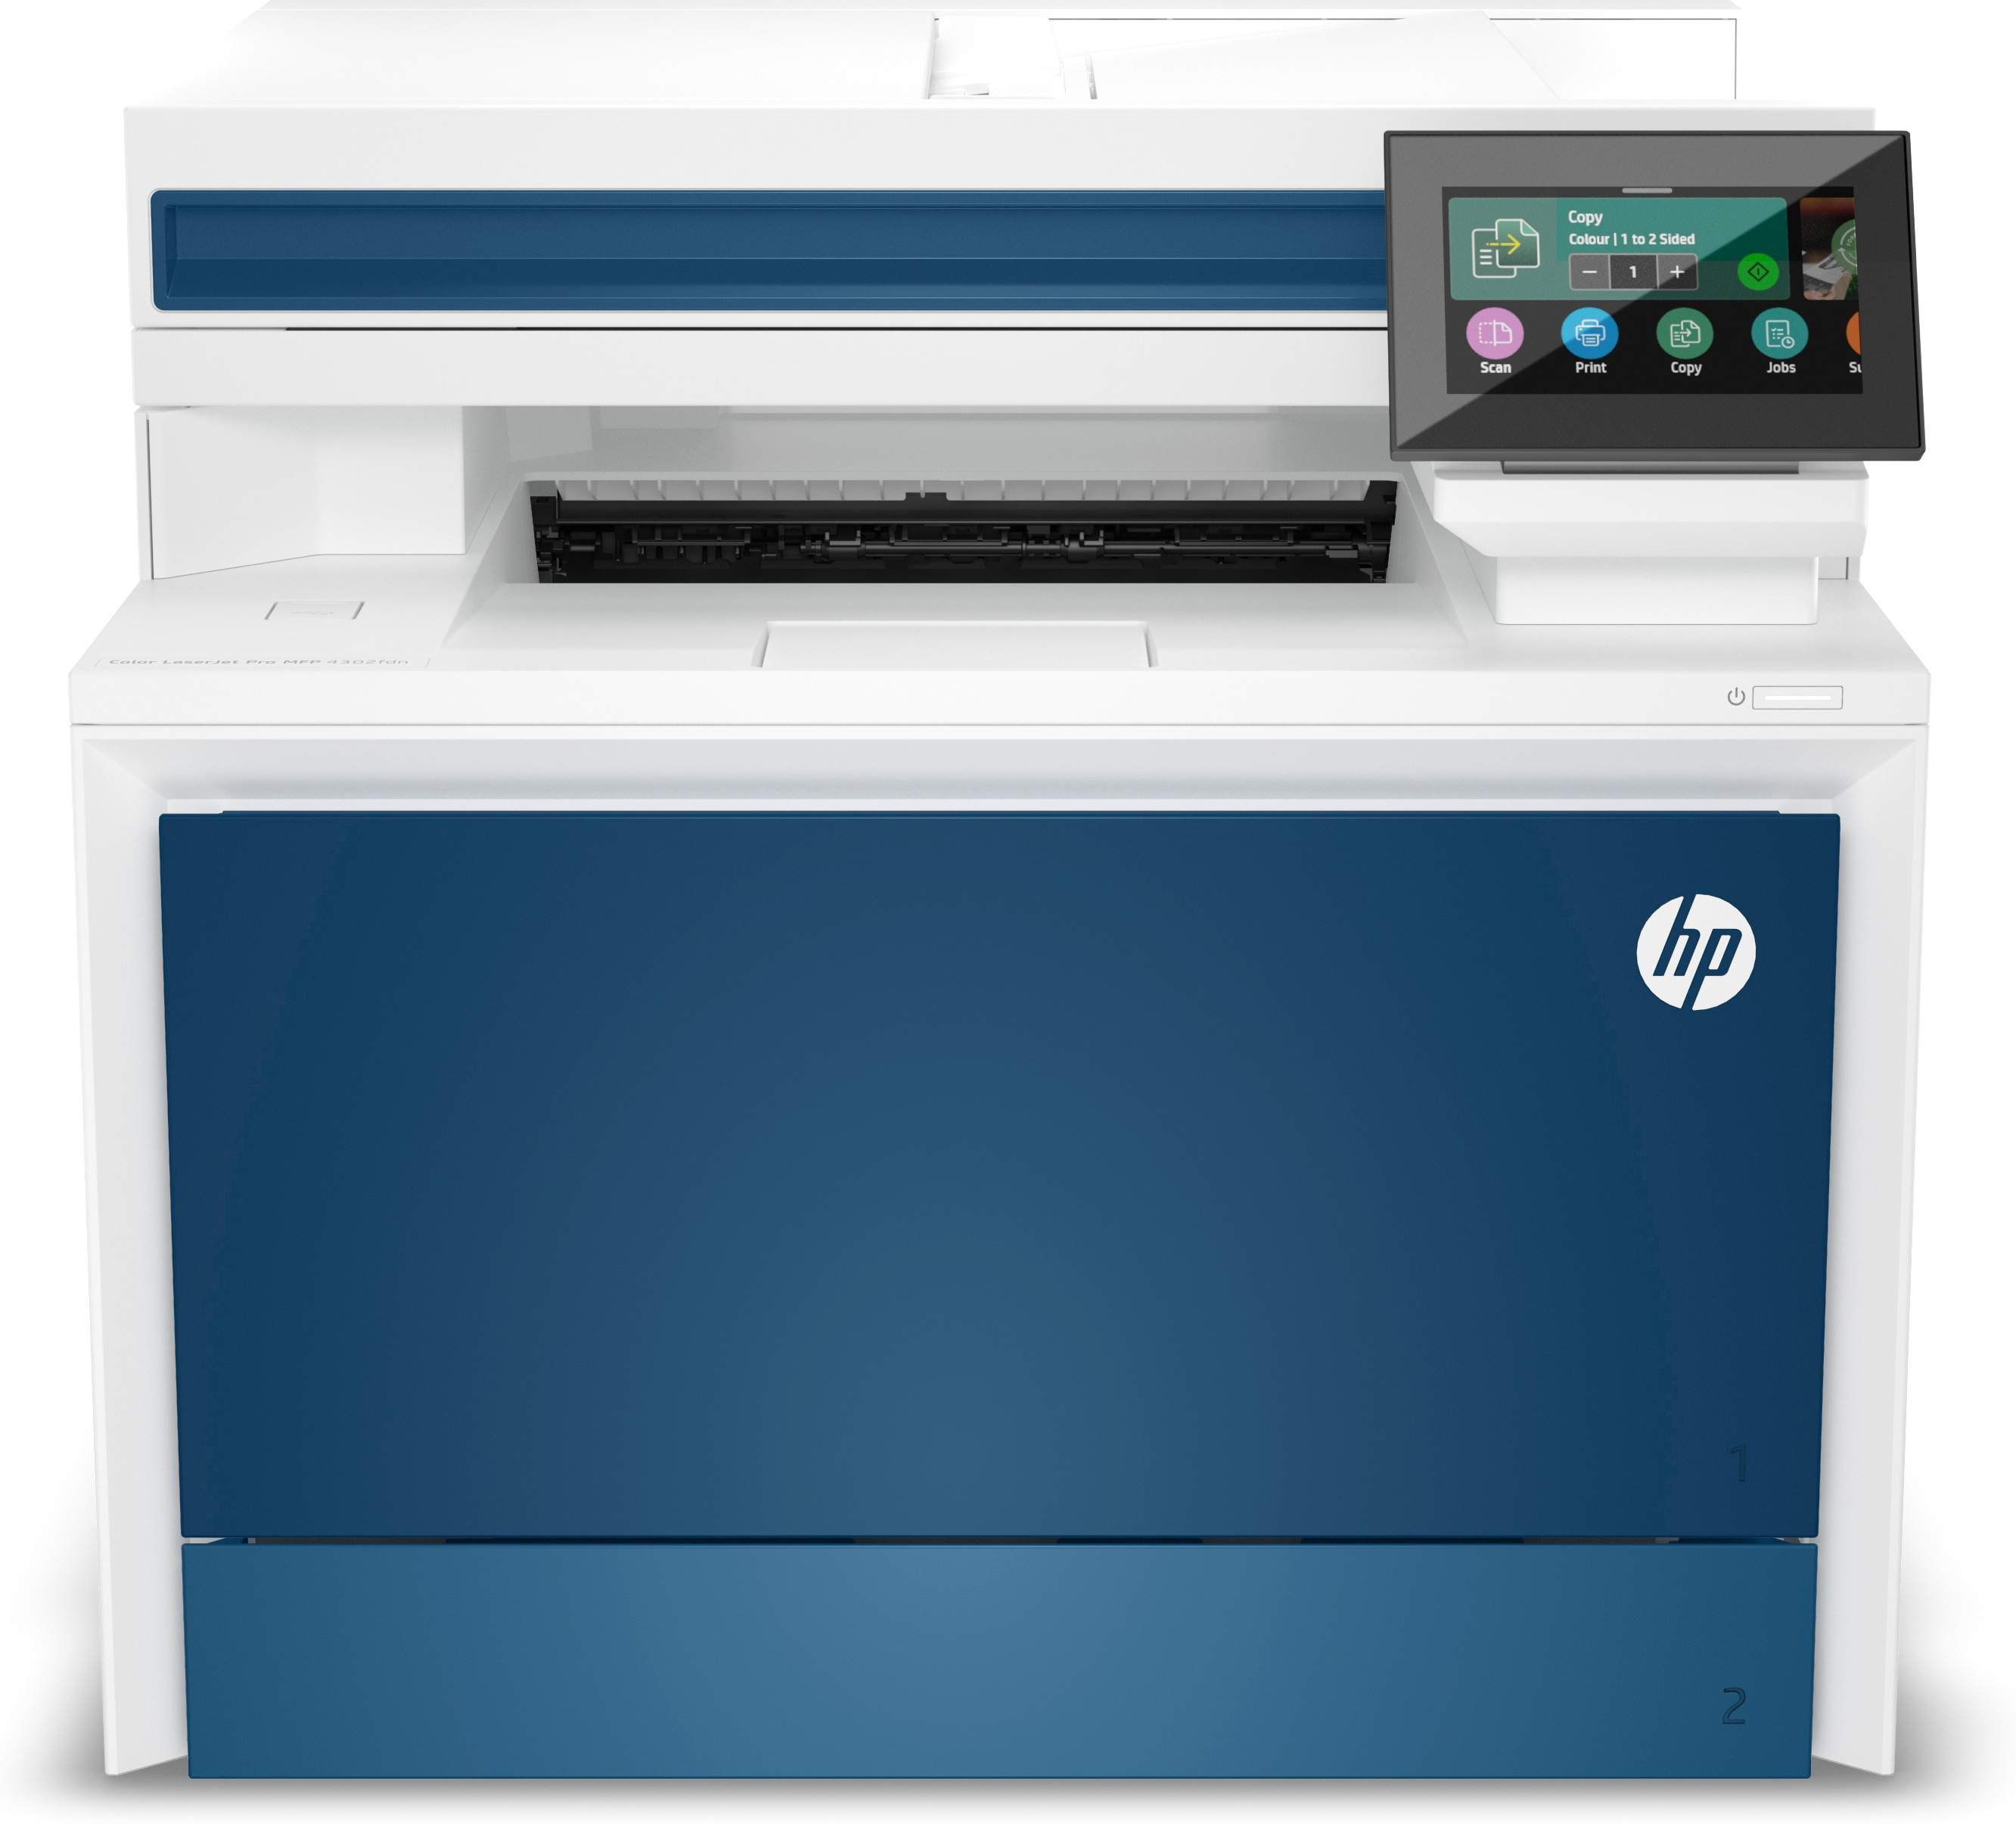 Image of HP Color LaserJet Pro Stampante multifunzione 4302fdn, Colore, Stampante per Piccole e medie imprese, Stampa, copia, scansione, fax, Stampa da smartphone o tablet Alimentatore automatico di documenti Stampa fronte/retro